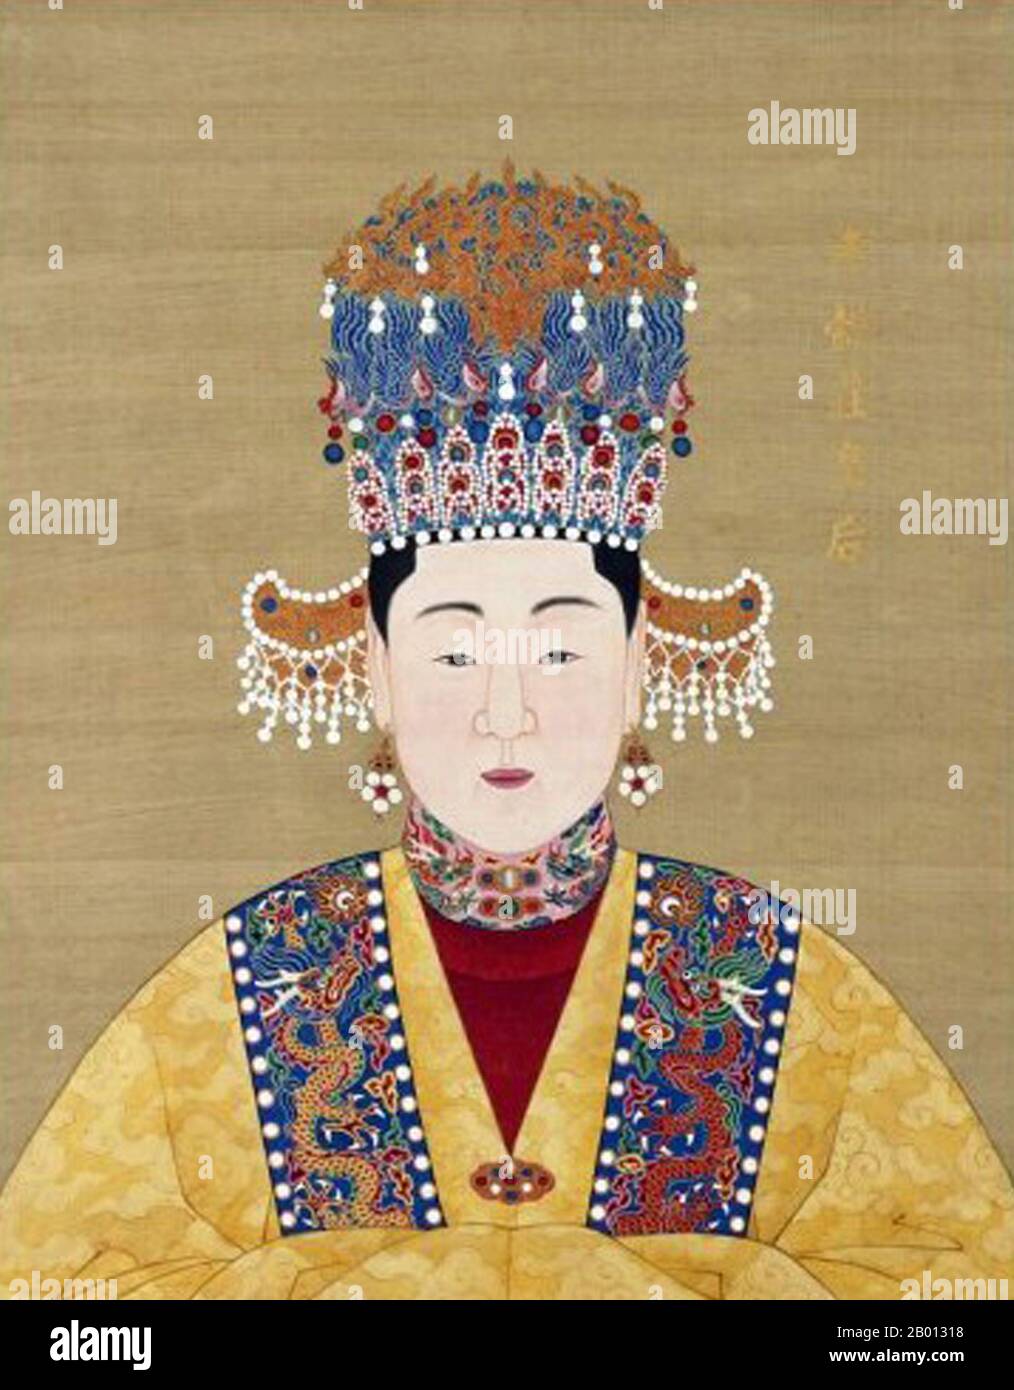 Cina: Imperatrice Xiao Yi Zhuang (-1558), consorte del 13° imperatore Ming Longqing (r. 1567-1572). Pittura a chiocciola sospesa, XVI-XVII secolo. L'imperatrice Xiaoyizhuang fu la prima consorte dell'Imperatore Longqing della Dinastia Ming. Sposò l'imperatore nel 1553 e gli partorì tre figli, ma morì nel 1558. Foto Stock